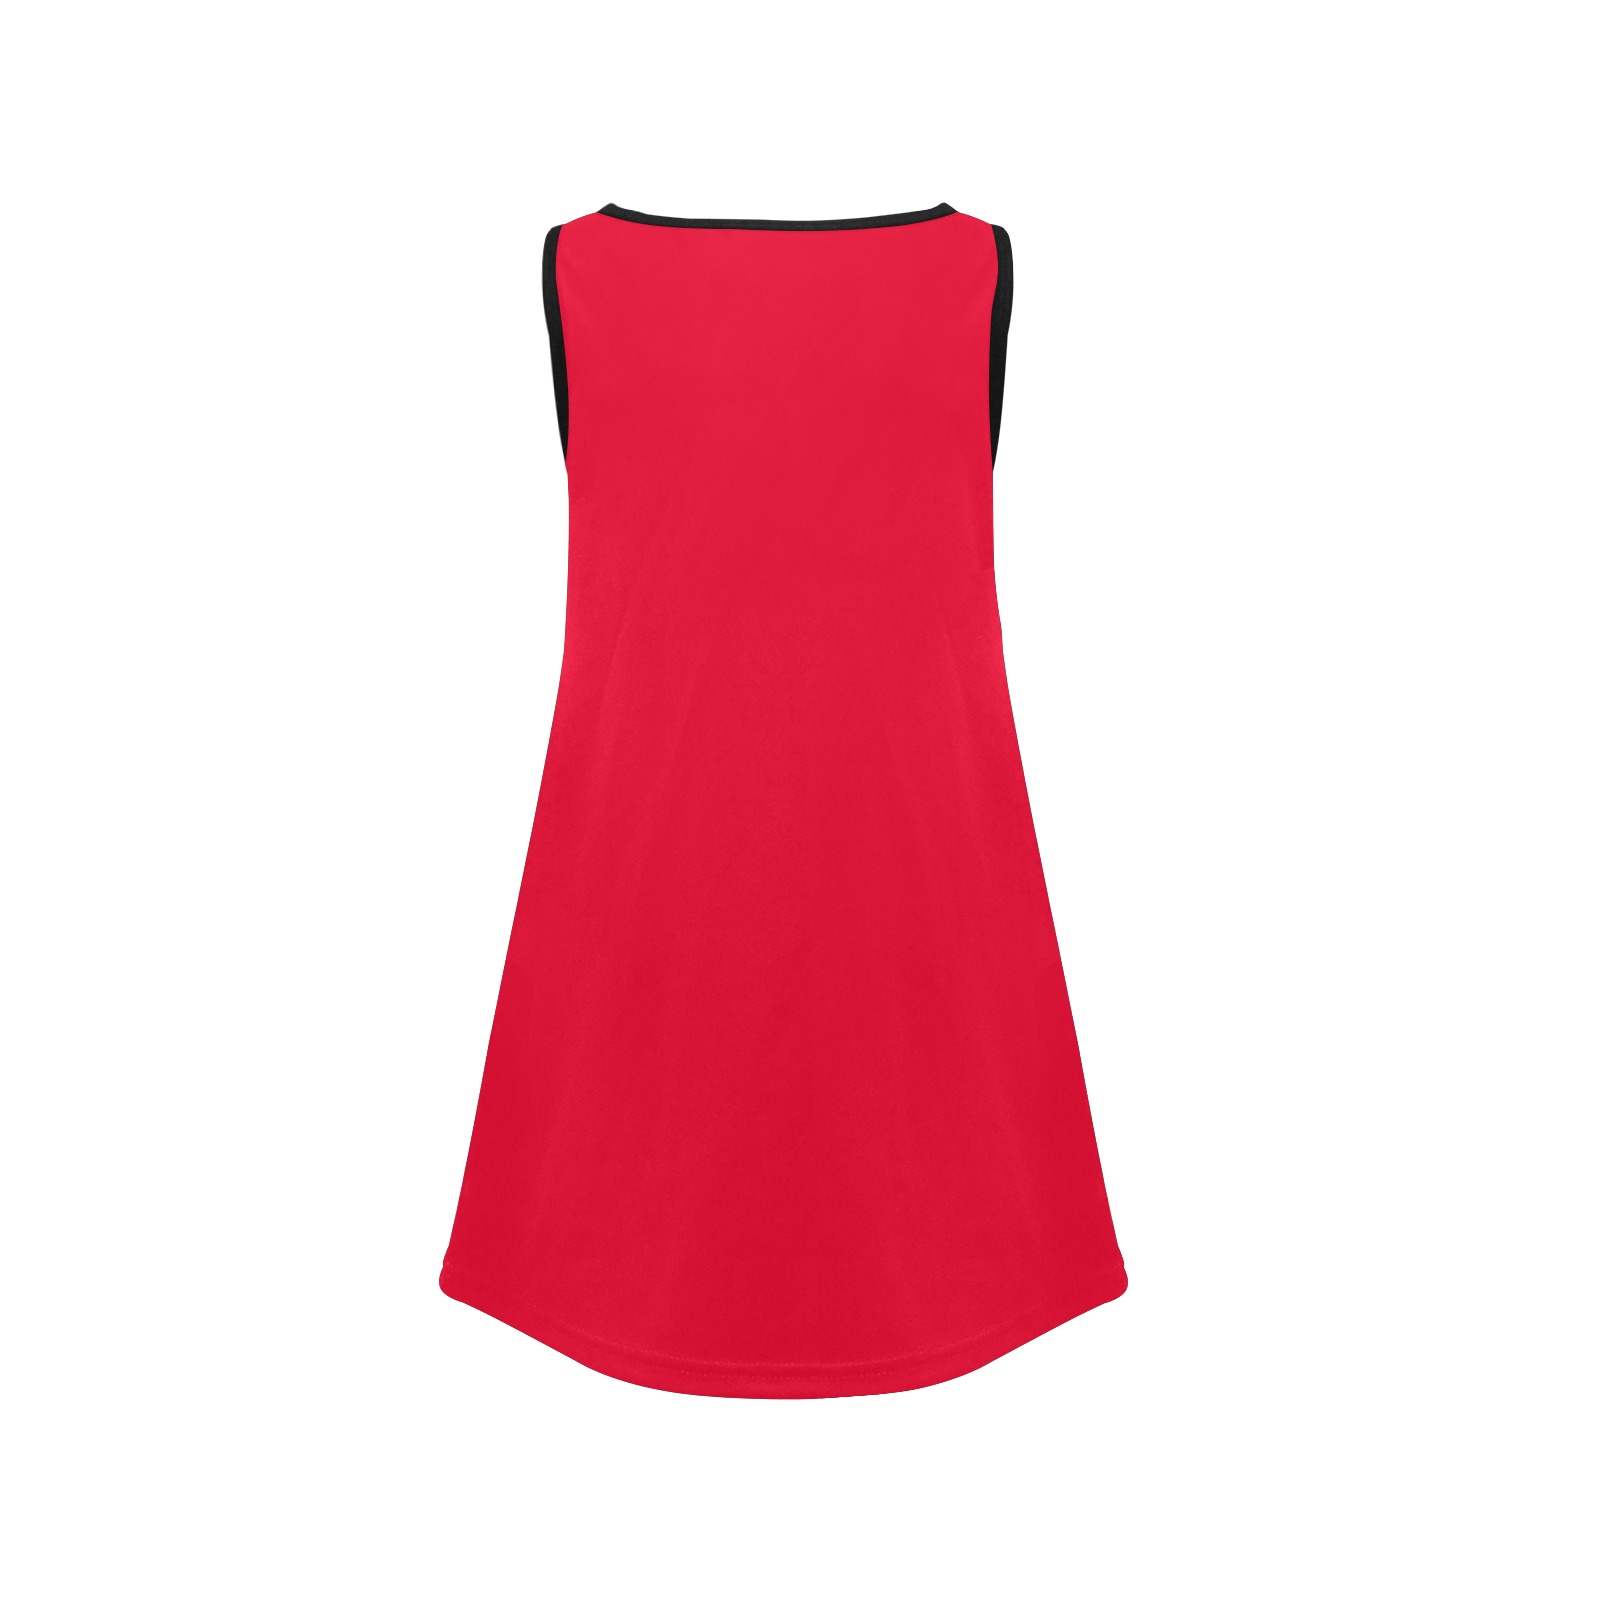 color Spanish red Girls' Sleeveless Dress (Model D58)